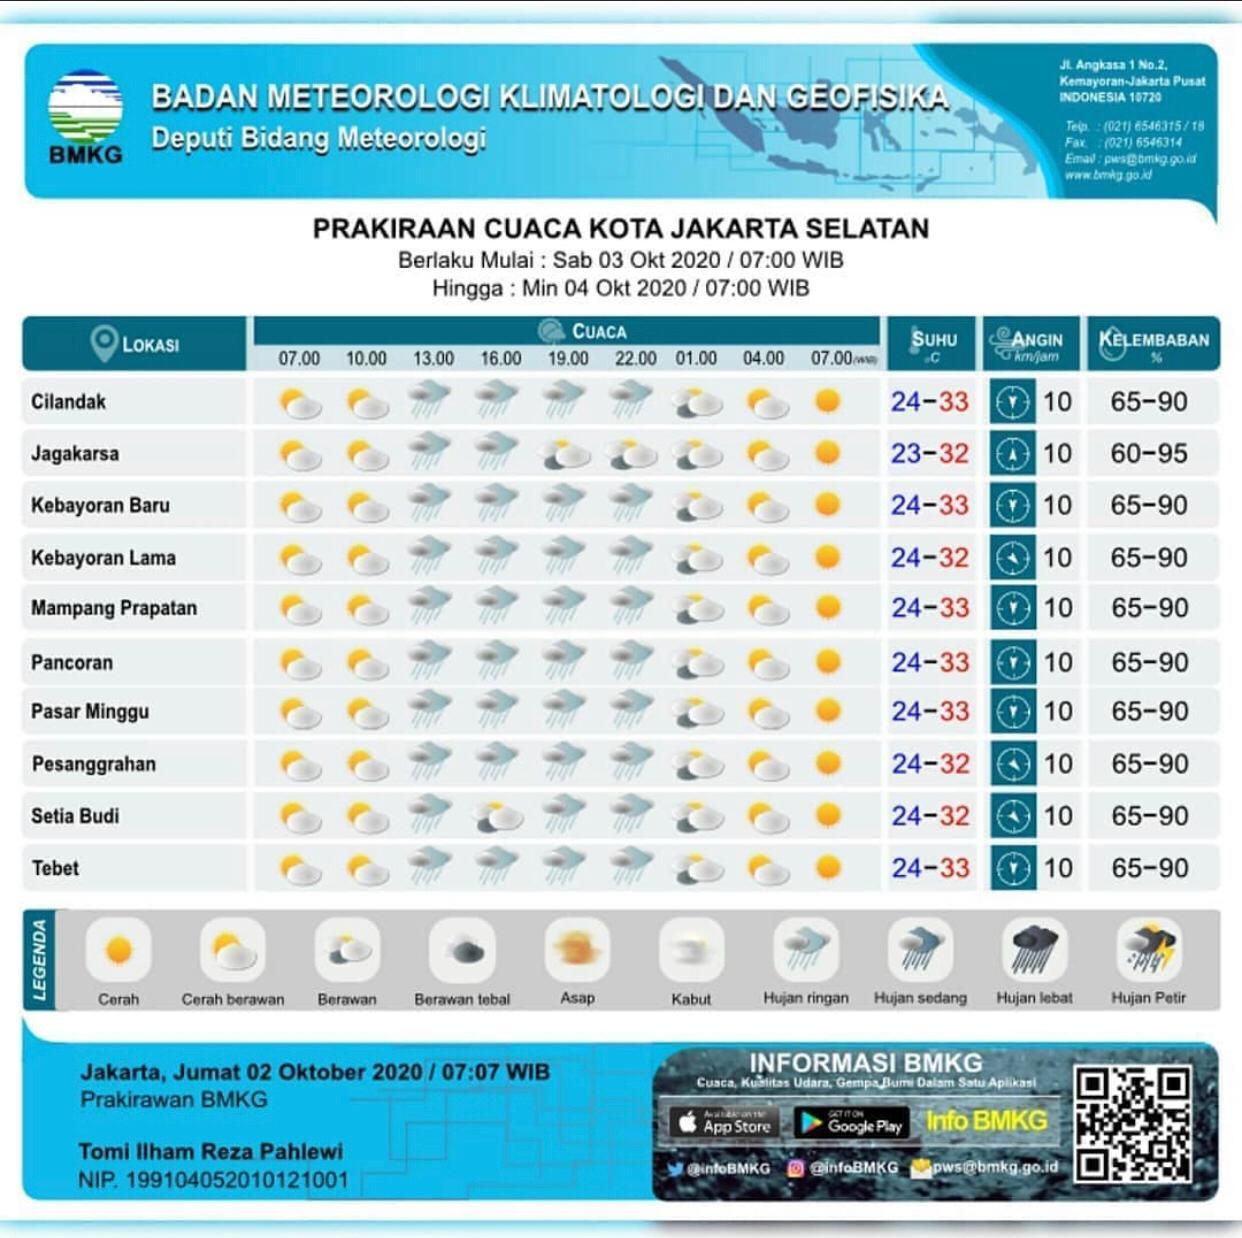 Simak Prakiraan Cuaca Jakarta Selatan Per-Kecamatan Besok, Sabtu 3